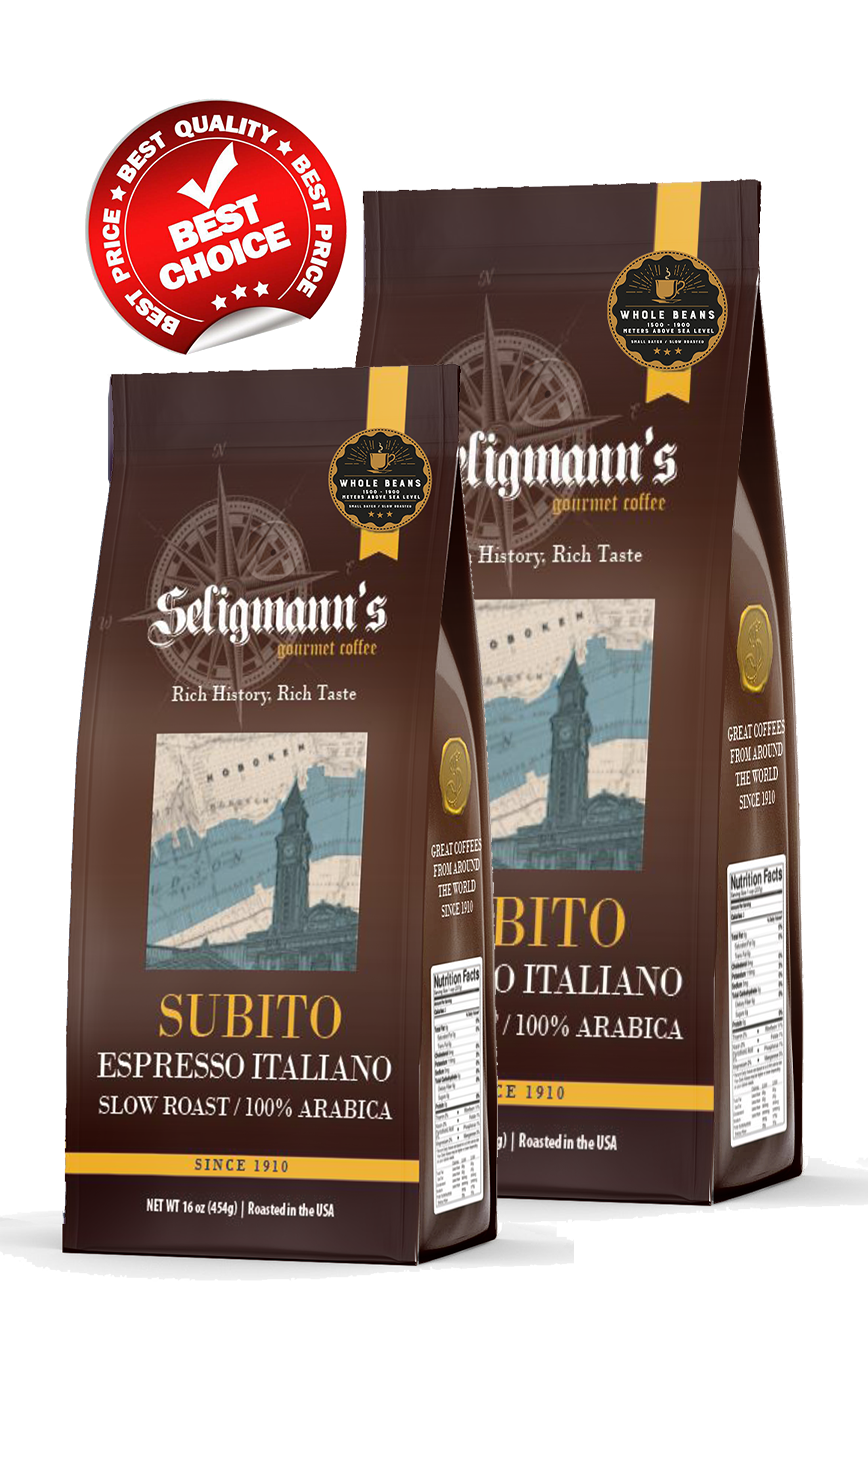 Subito Espresso Italiano Whole Bean Value Pack